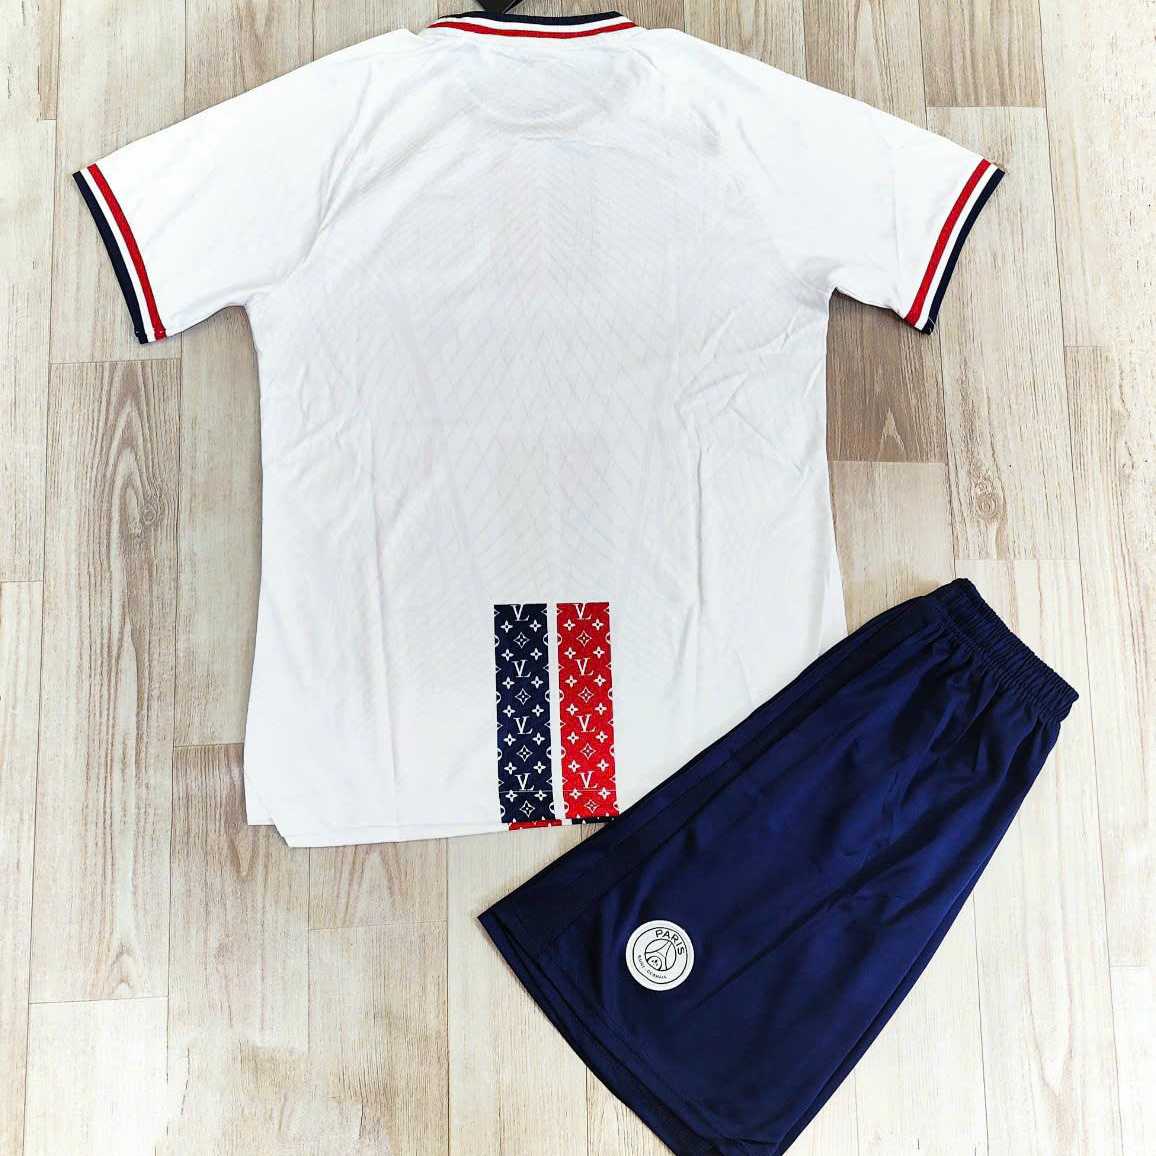 Bộ quần áo bóng đá psg Paris Saint-Germain trắng kẻ đen đỏ in LV logo thêu vải spf thái 1